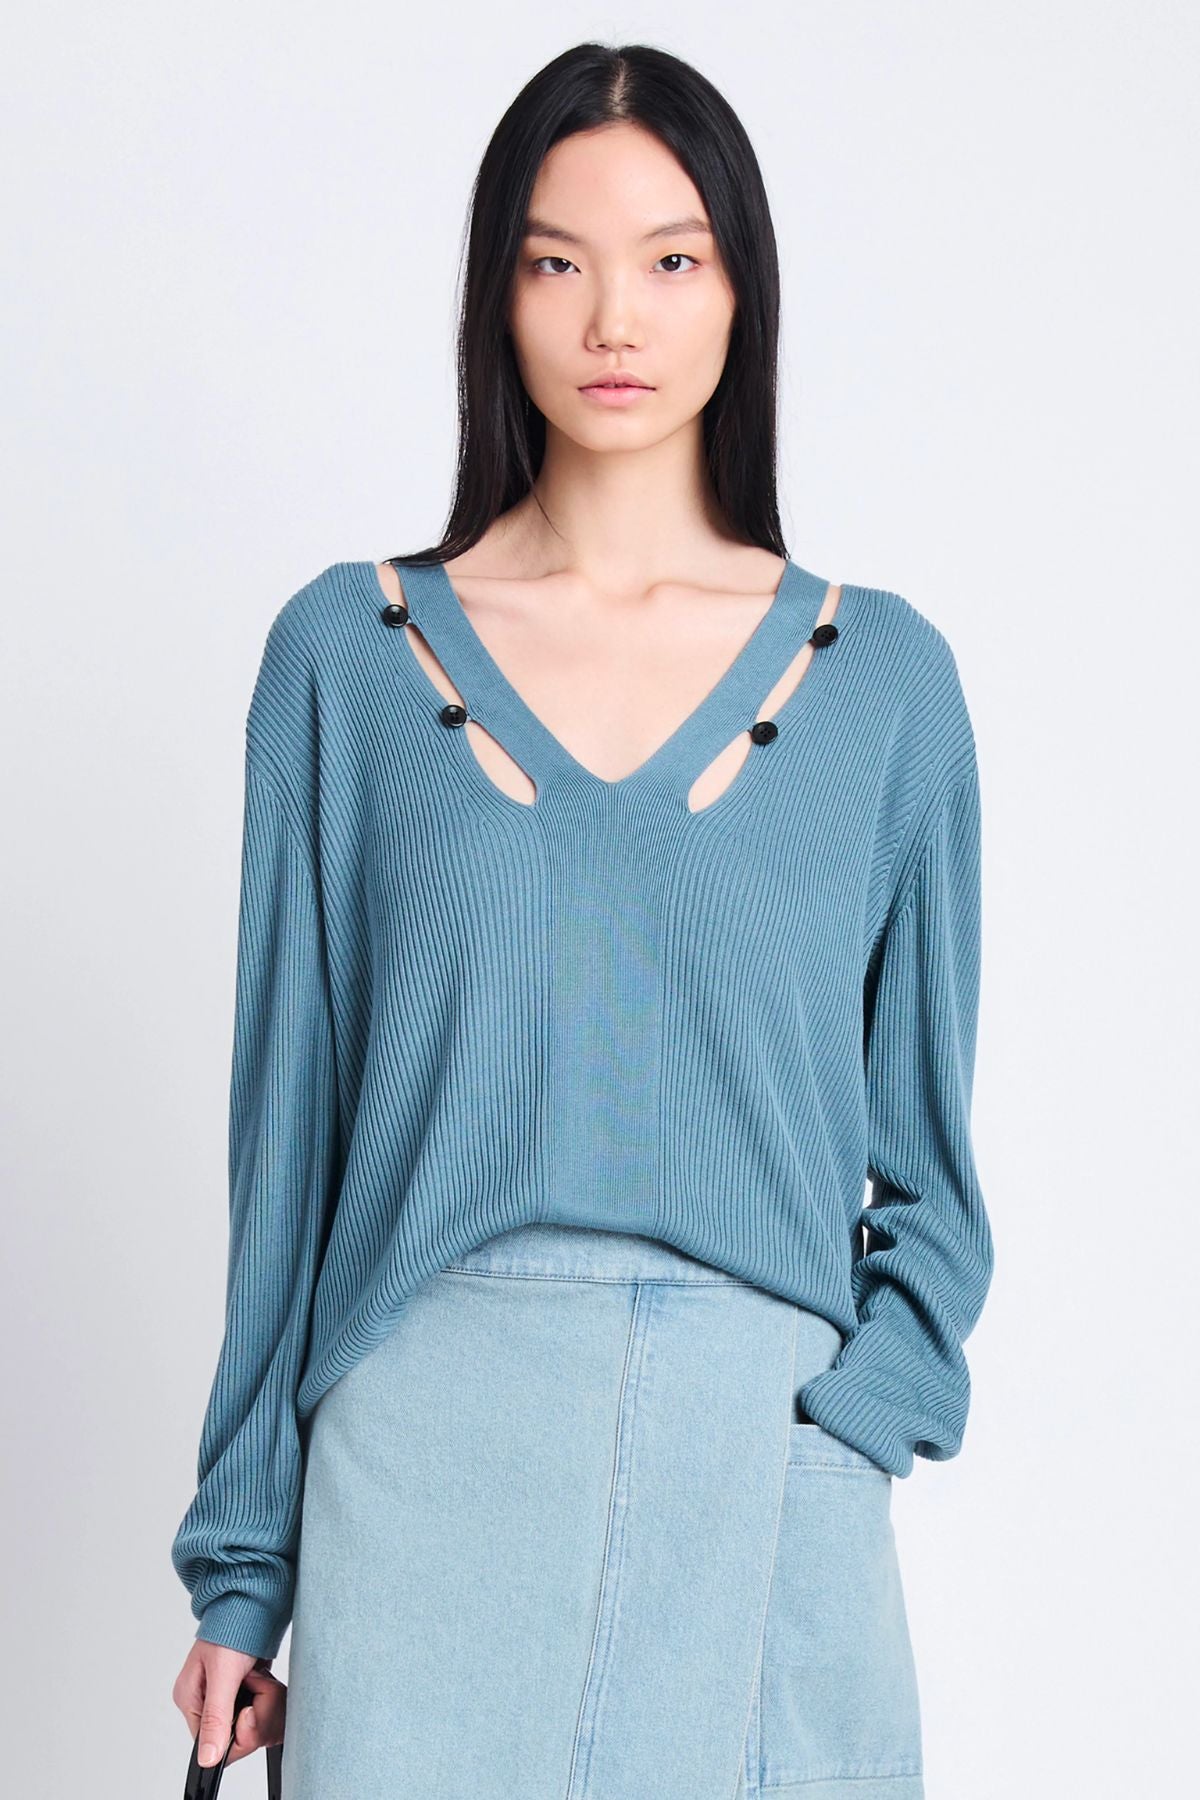 Proenza Schouler White Label Elsie Knit Sweater - Juniper